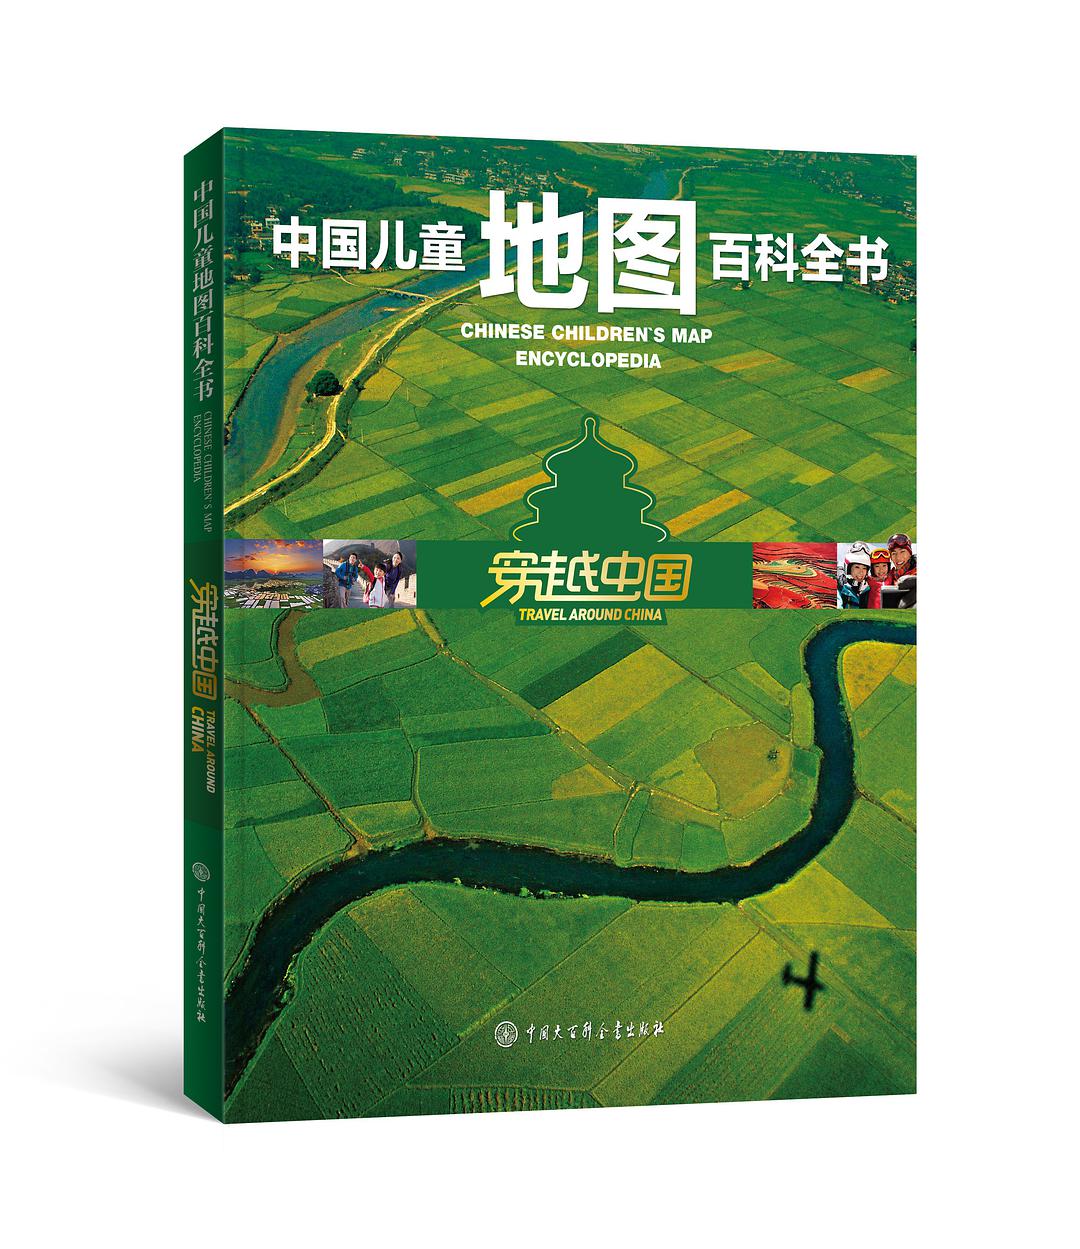 中国儿童地图百科全书 穿越中国 travel around China